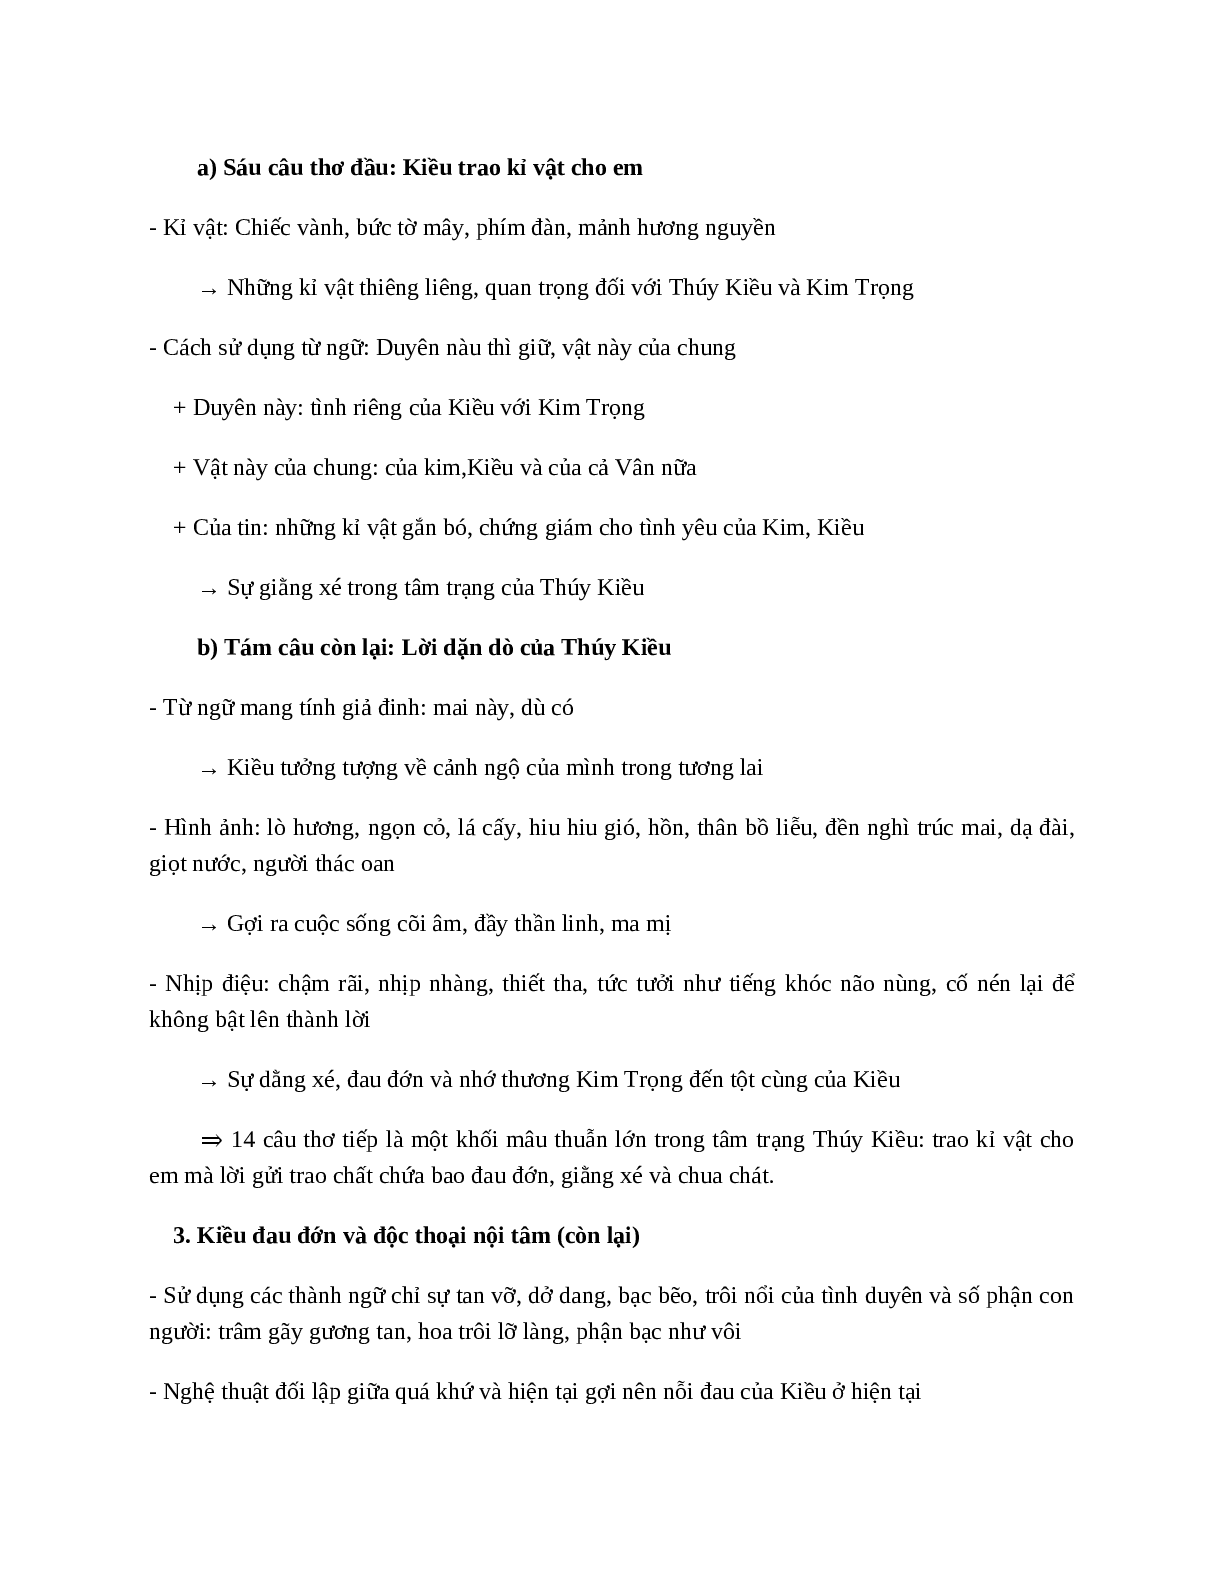 Trao duyên (Trích Truyện Kiều - Nguyễn Du) - nội dung, dàn ý phân tích, bố cục, tóm tắt (trang 6)